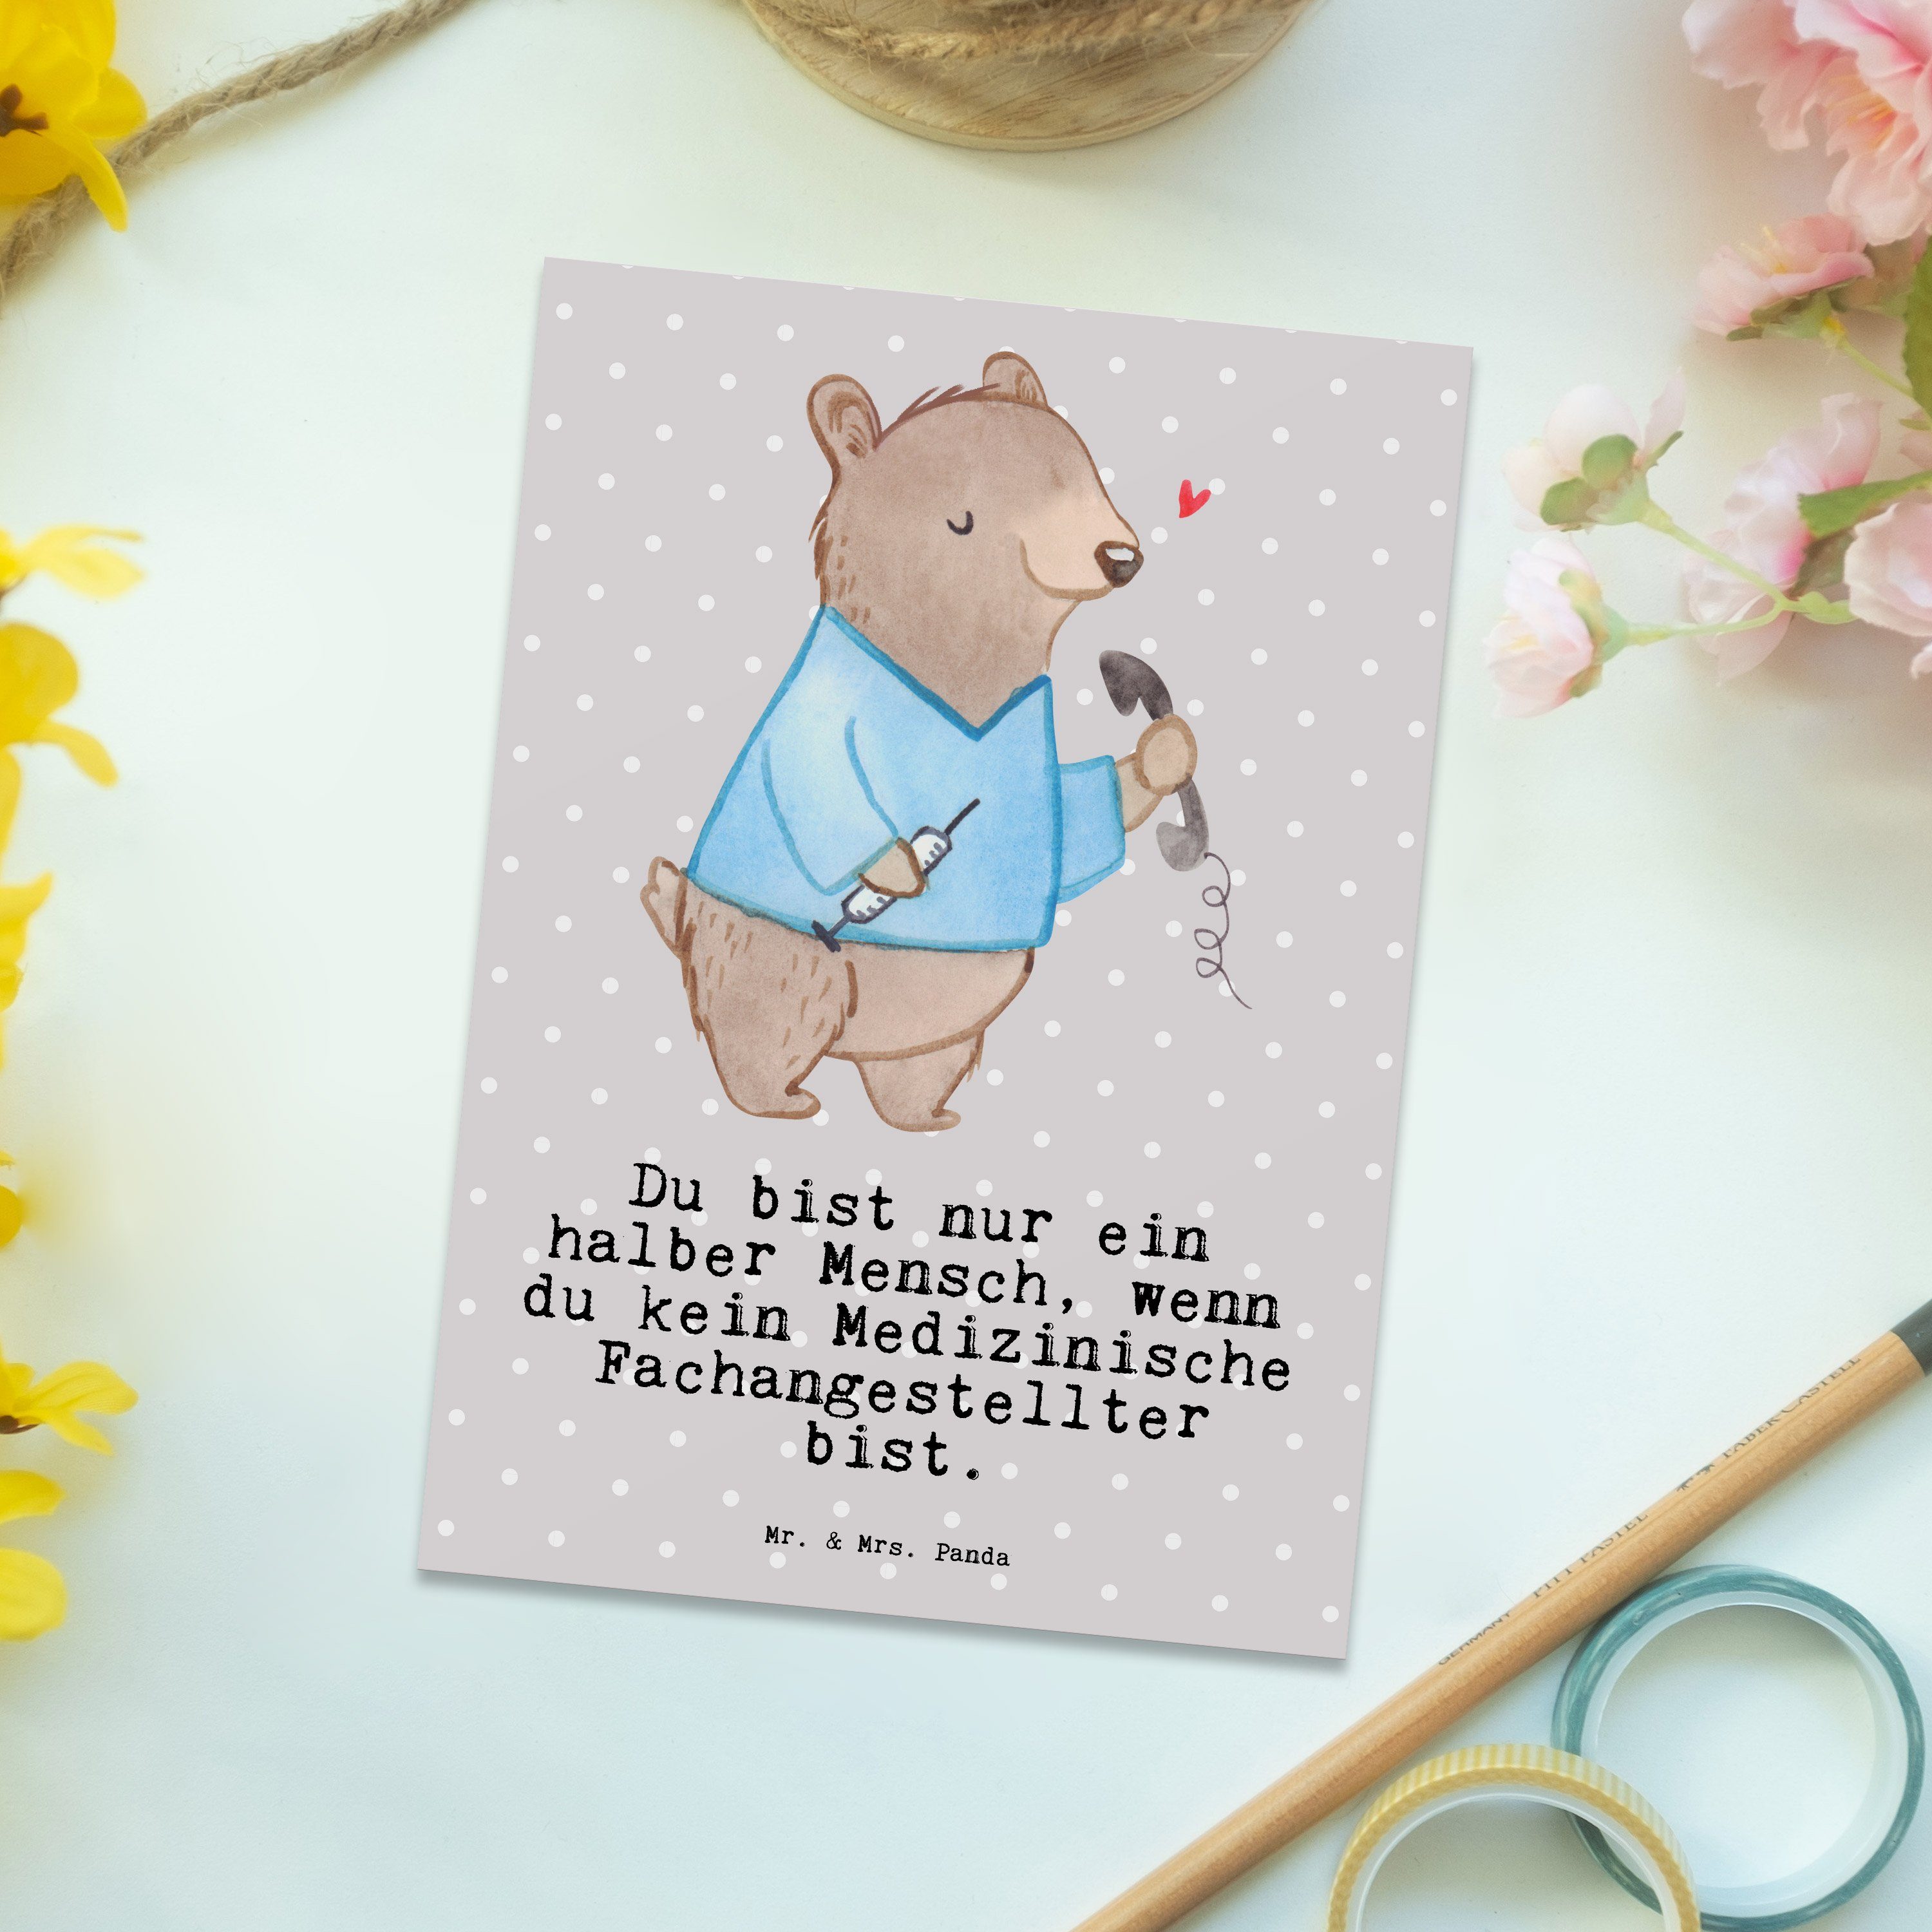 Pastell Mrs. - Arz Grau Fachangestellter Geschenk, Postkarte Panda Medizinische mit - & Herz Mr.